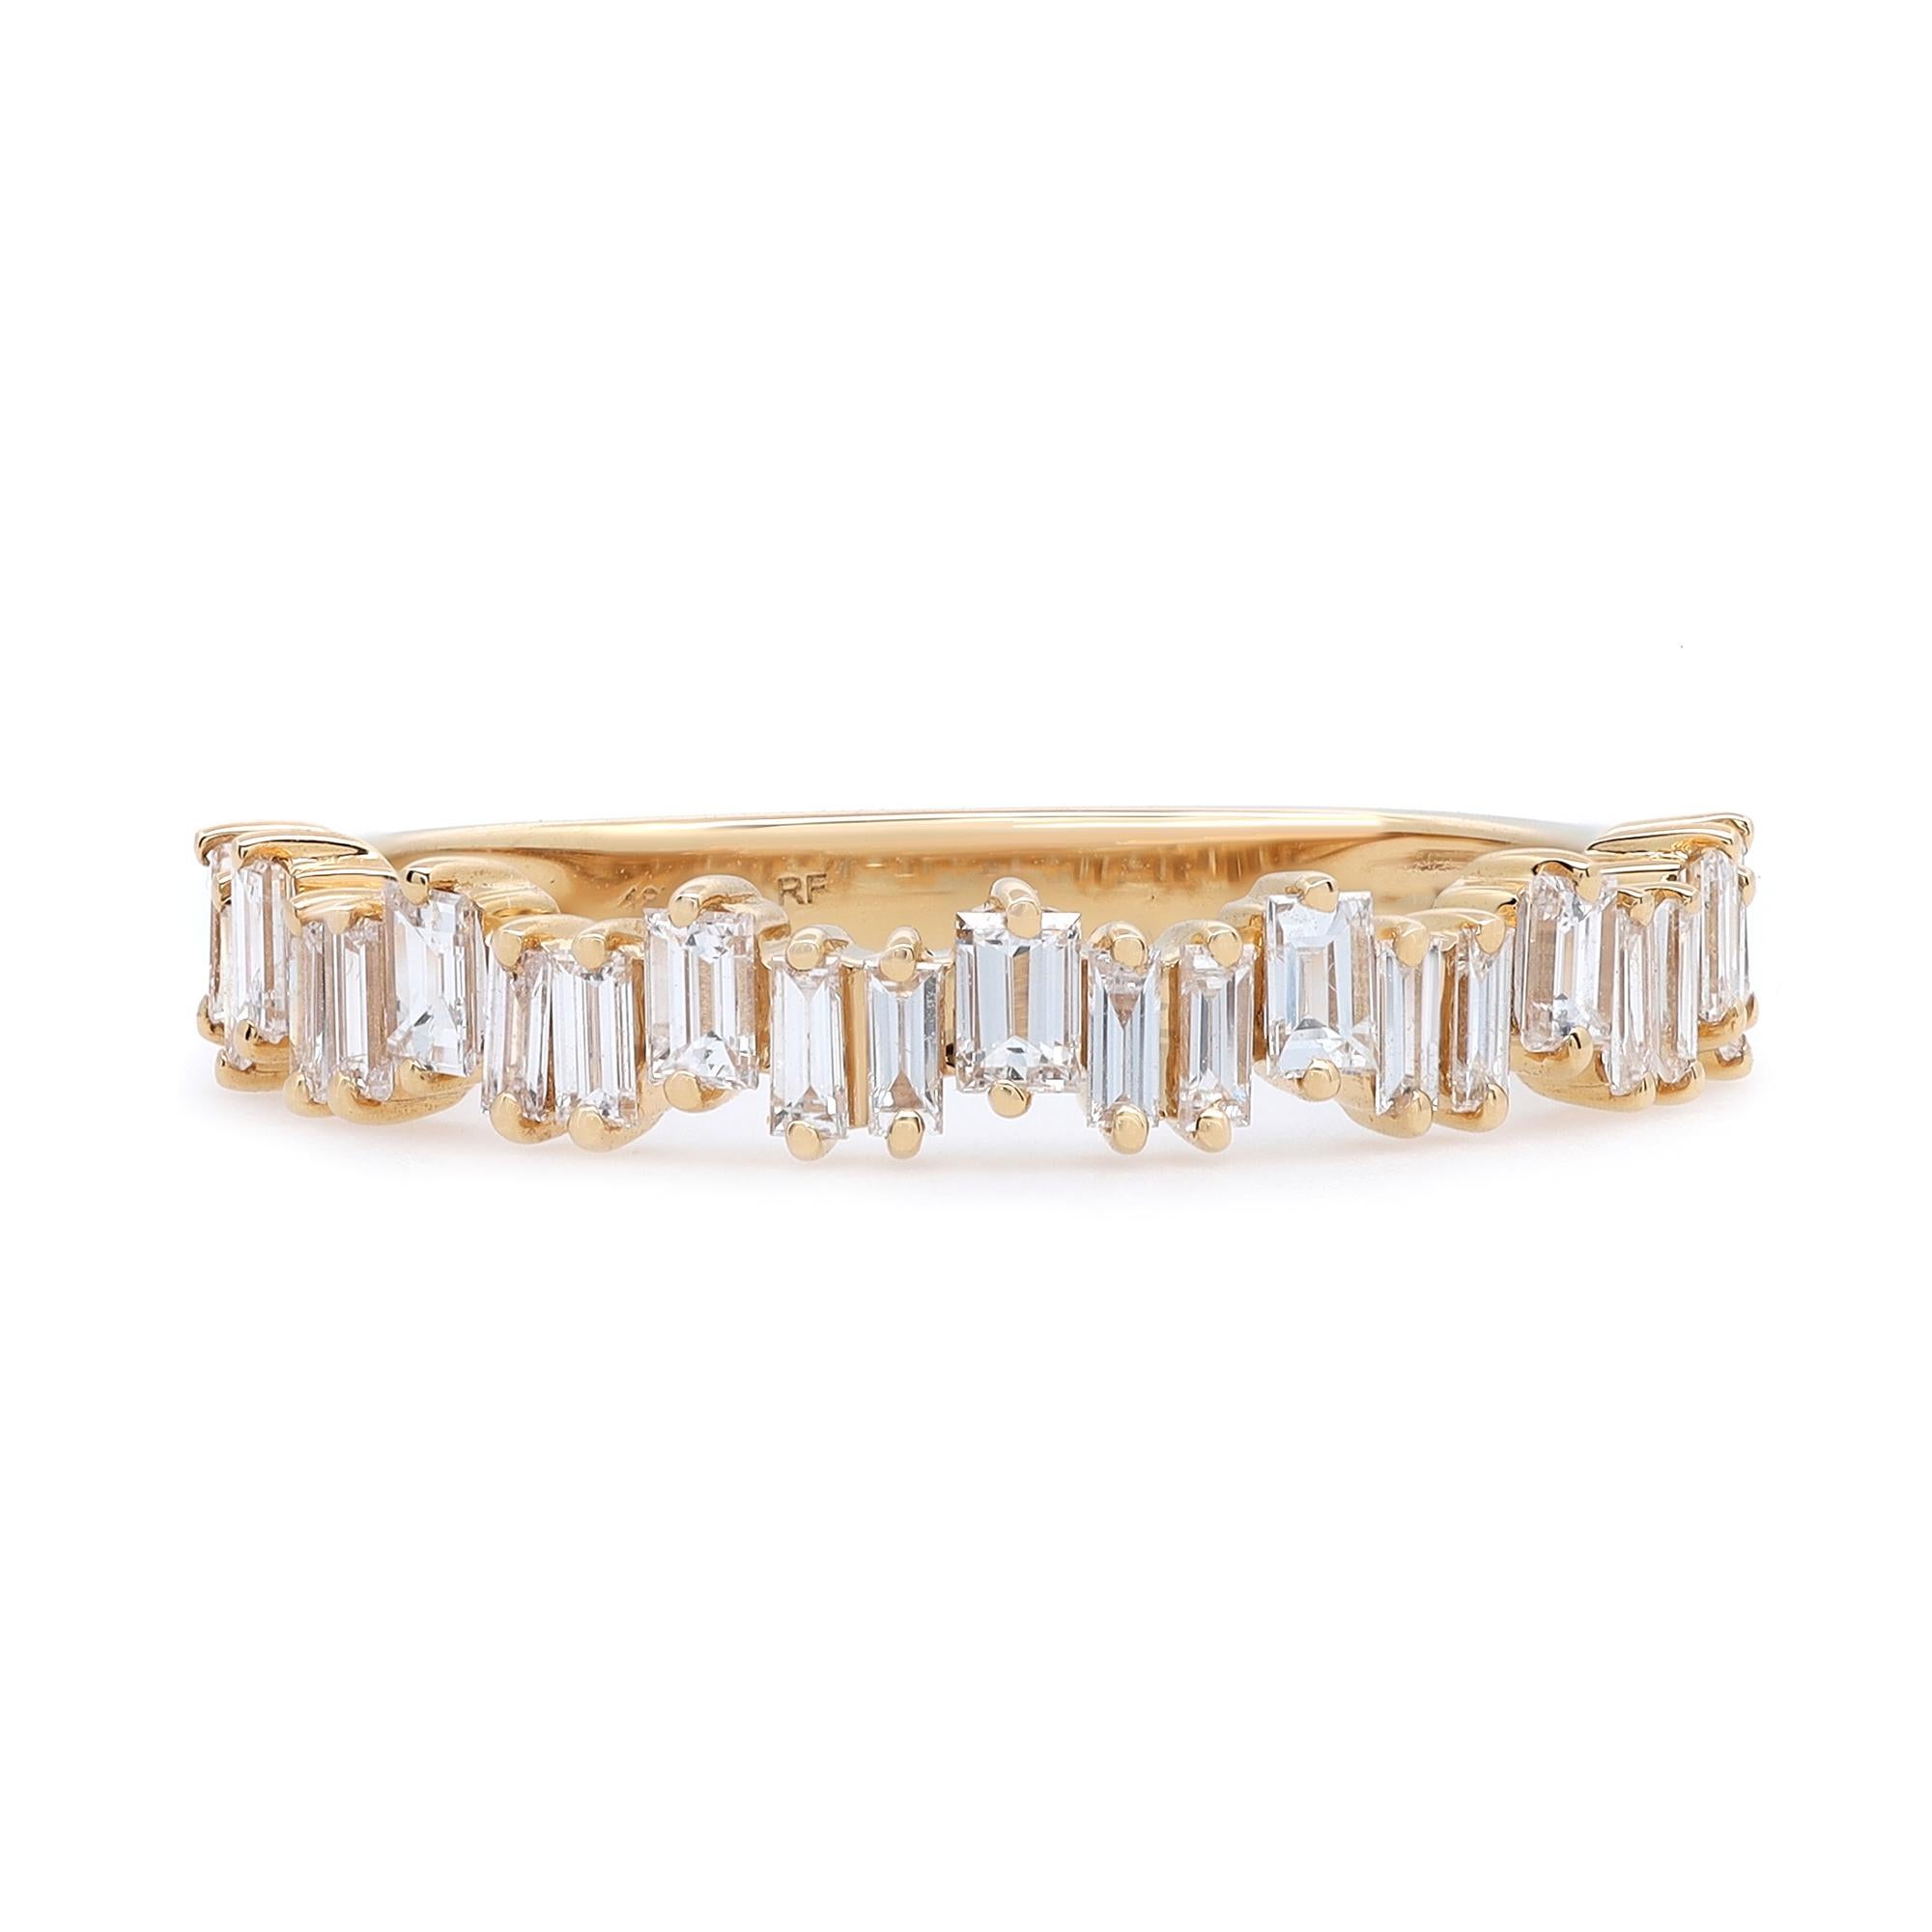 Schlichter und zarter Diamantring aus 18 Karat Gelbgold. Dieser Ring zeichnet sich durch zackenförmig gefasste Diamanten im Baguetteschliff aus, die in einem Zickzackmuster gefasst sind und einen zeitlosen, auffälligen Stil darstellen. Er ist